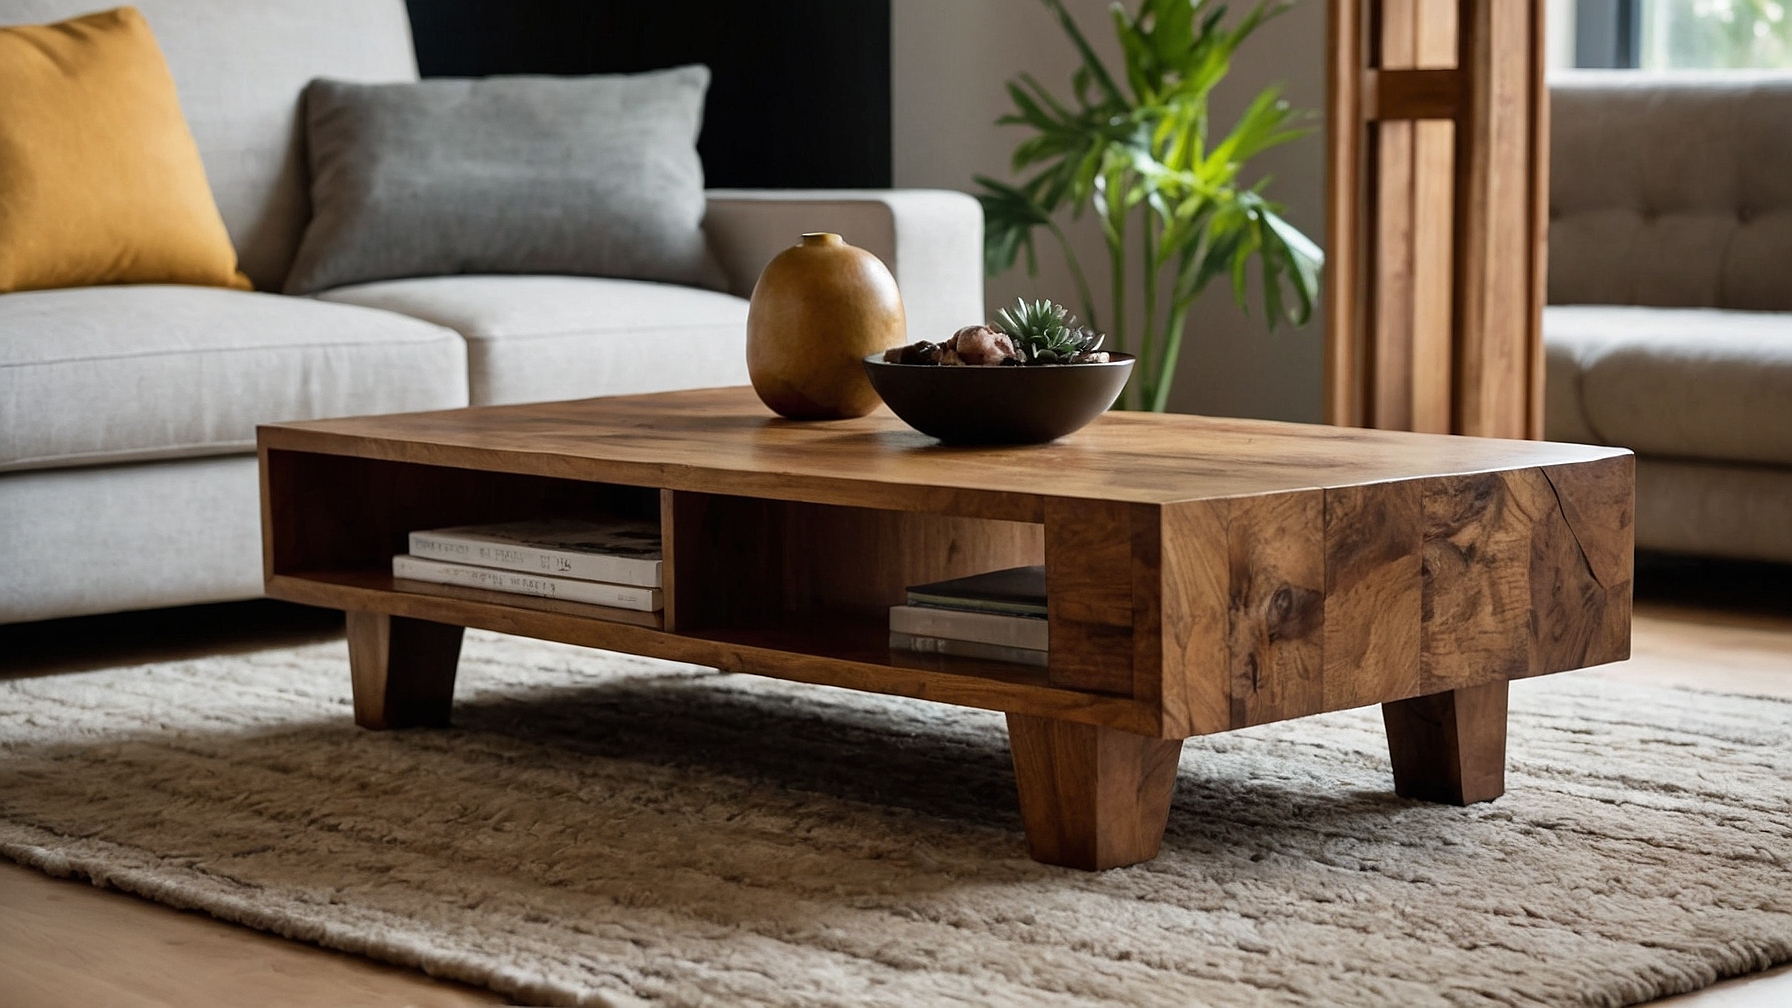 Default Minimalist house Wood Coffee Table Modern Style Timel 0 3